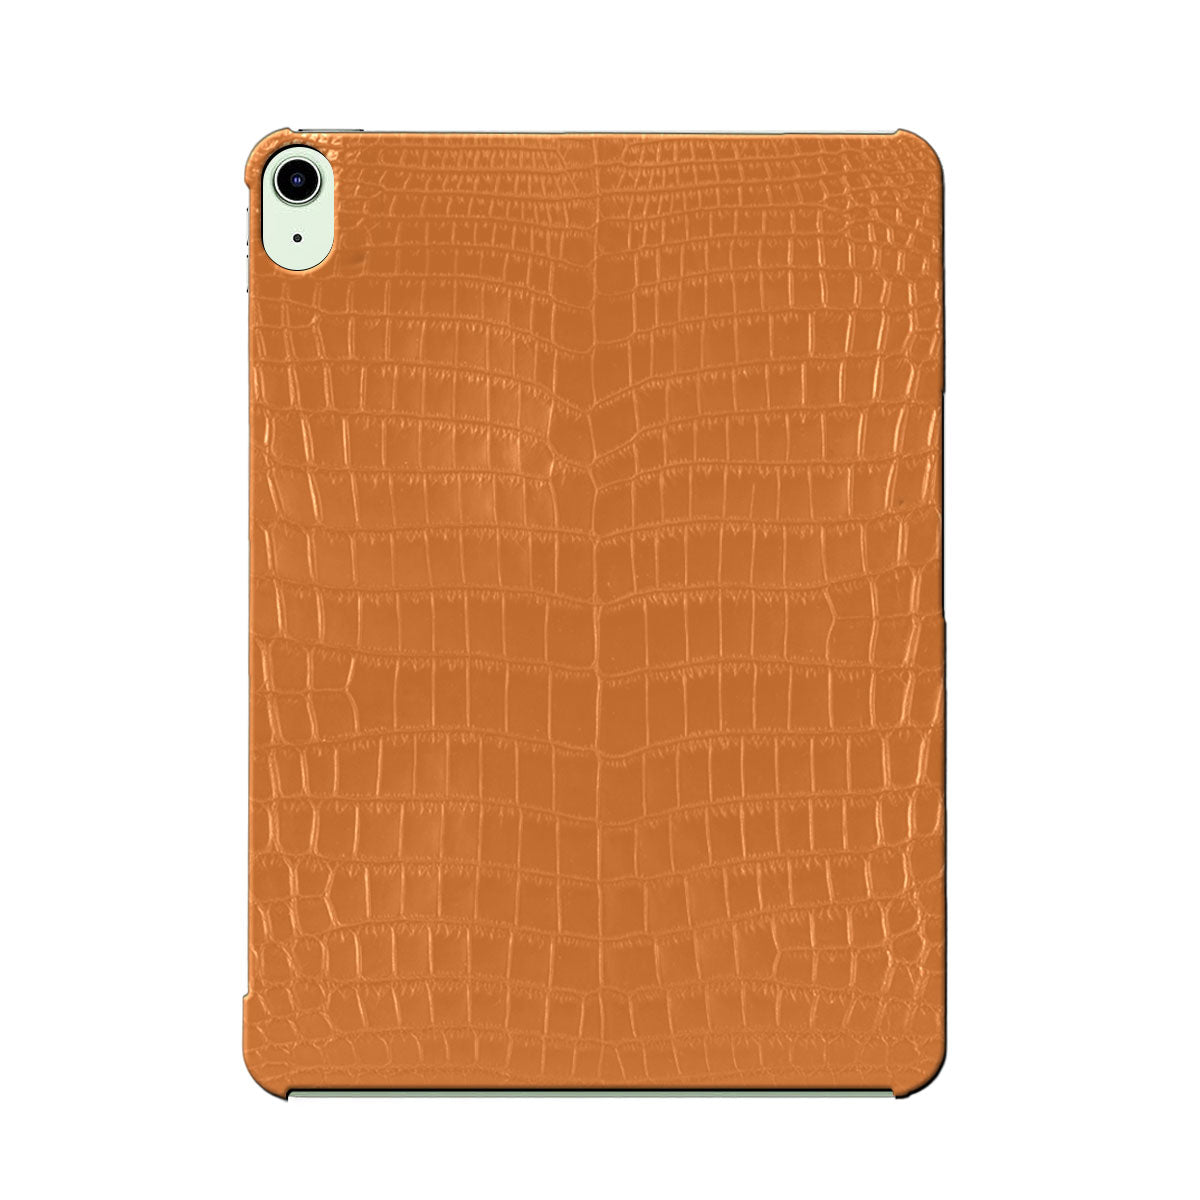 Premium Leather iPad Cases, iPad Cover